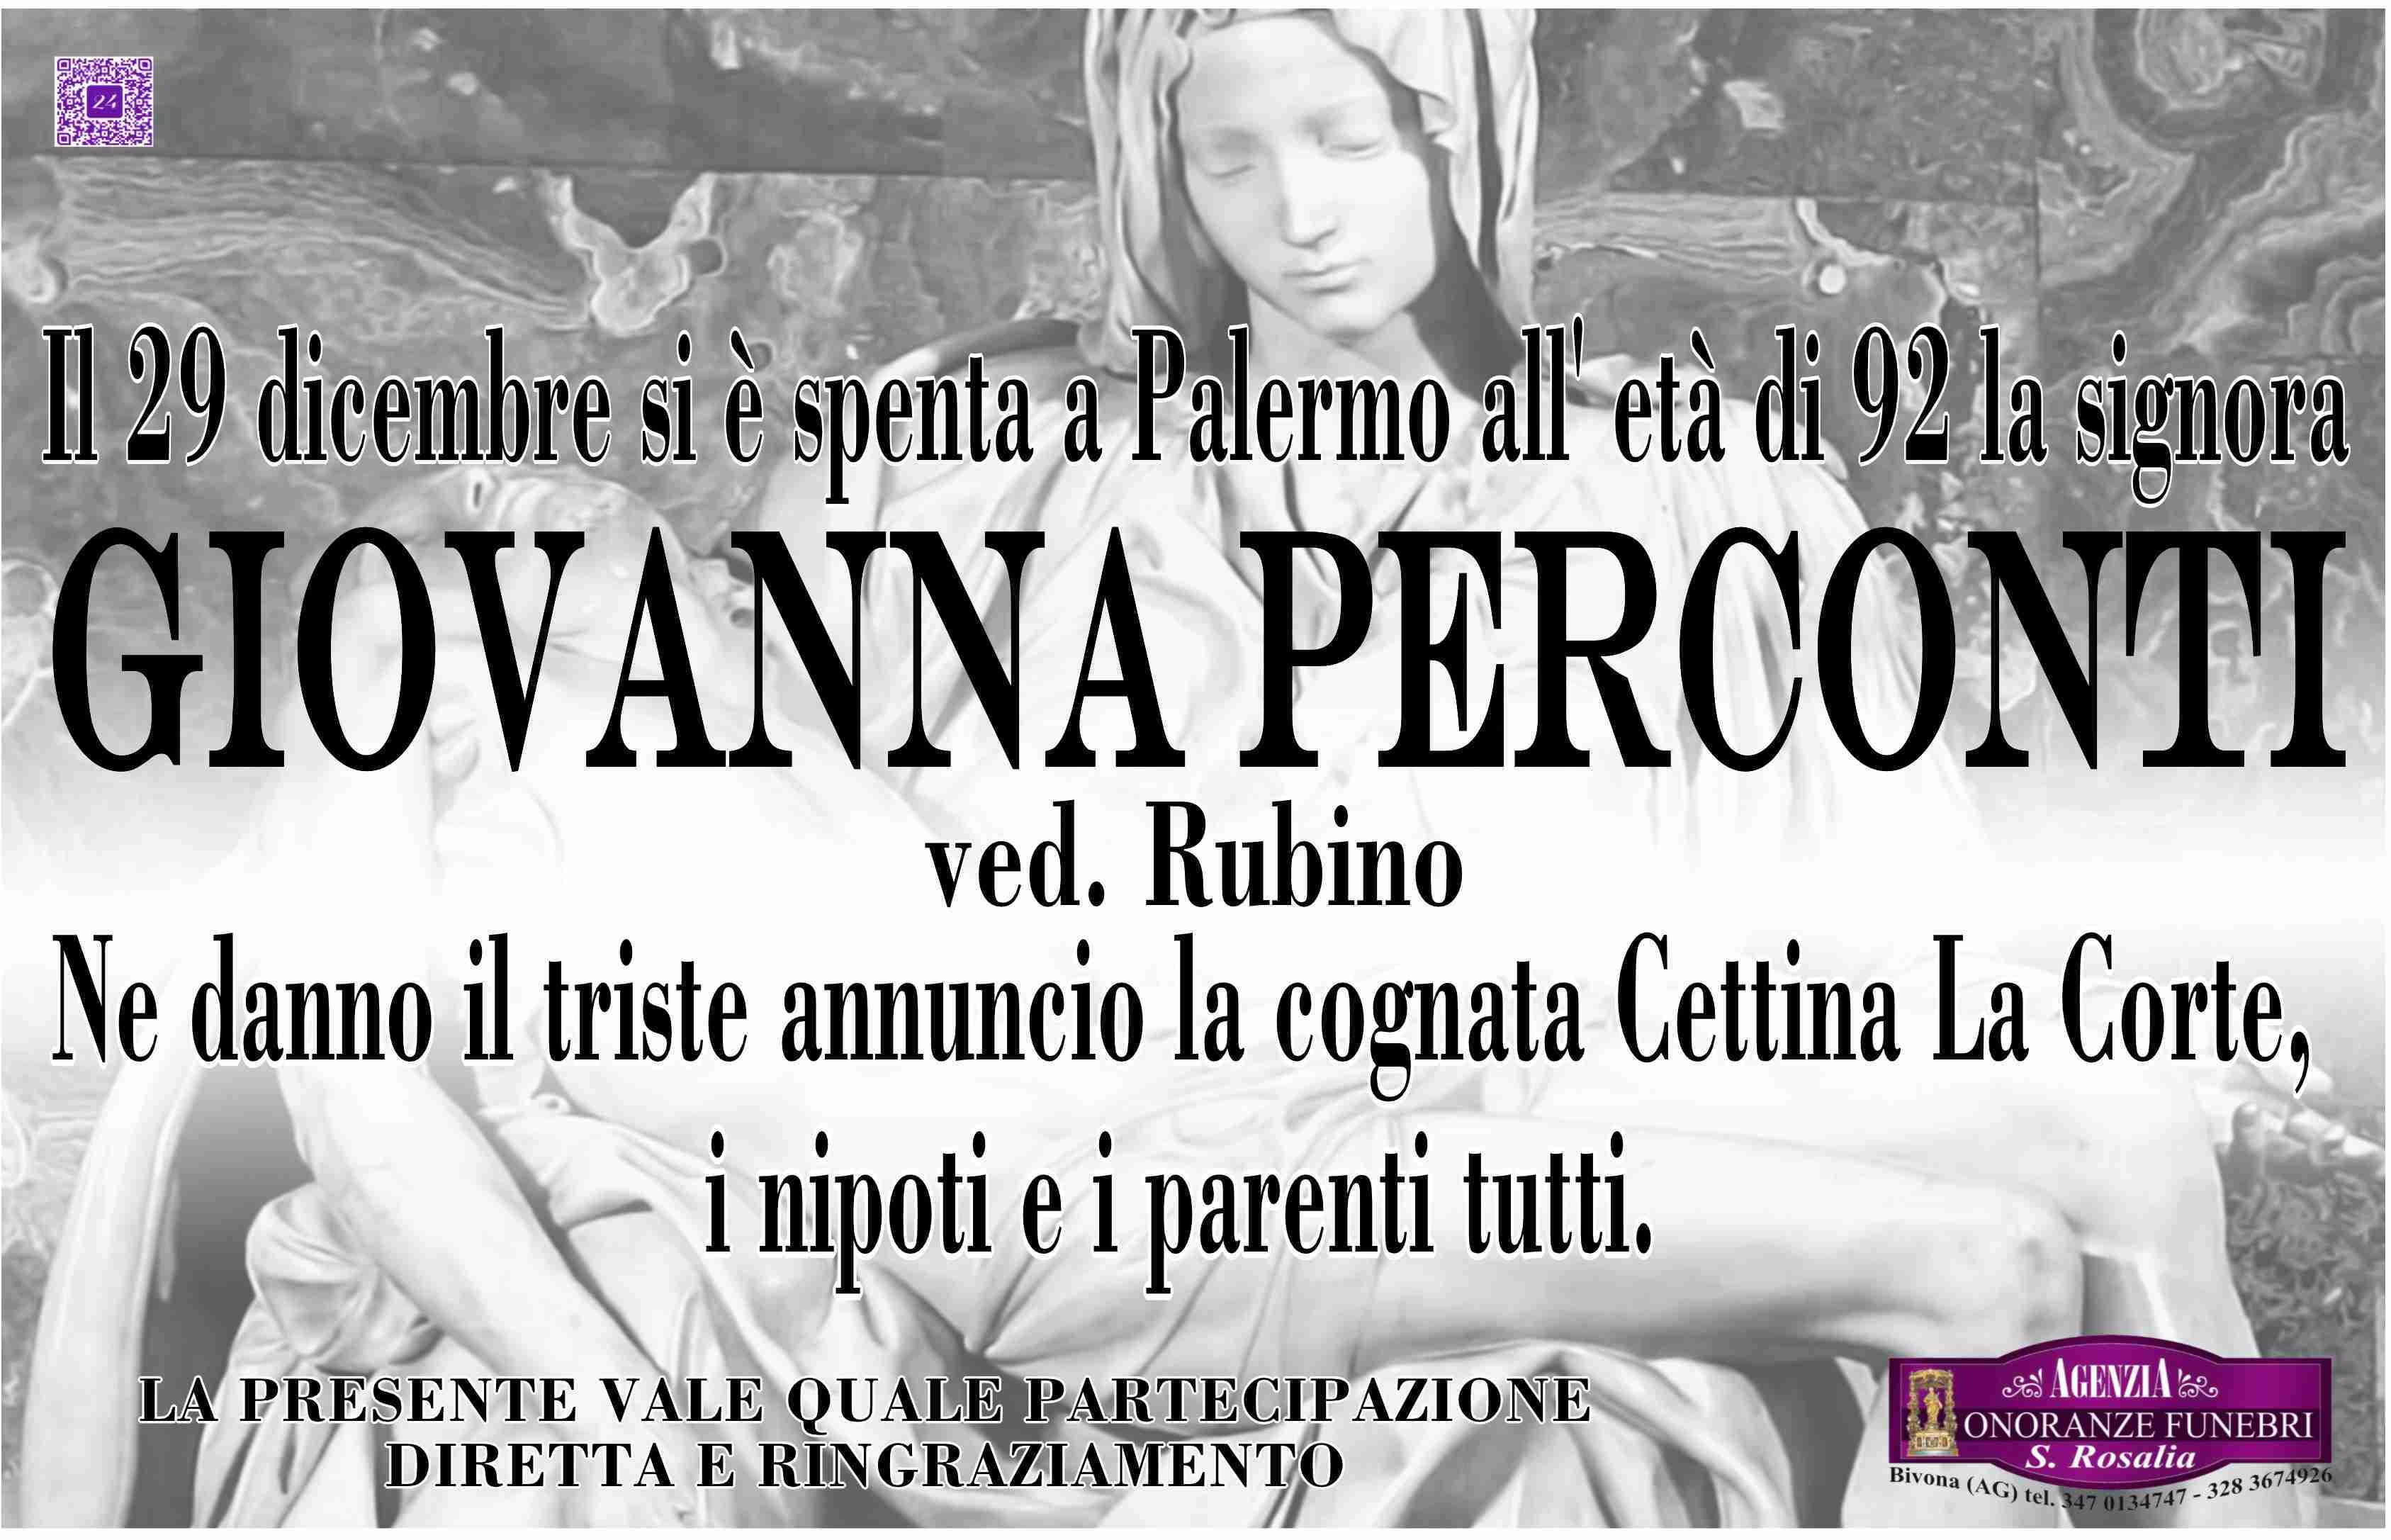 Giovanna Perconti